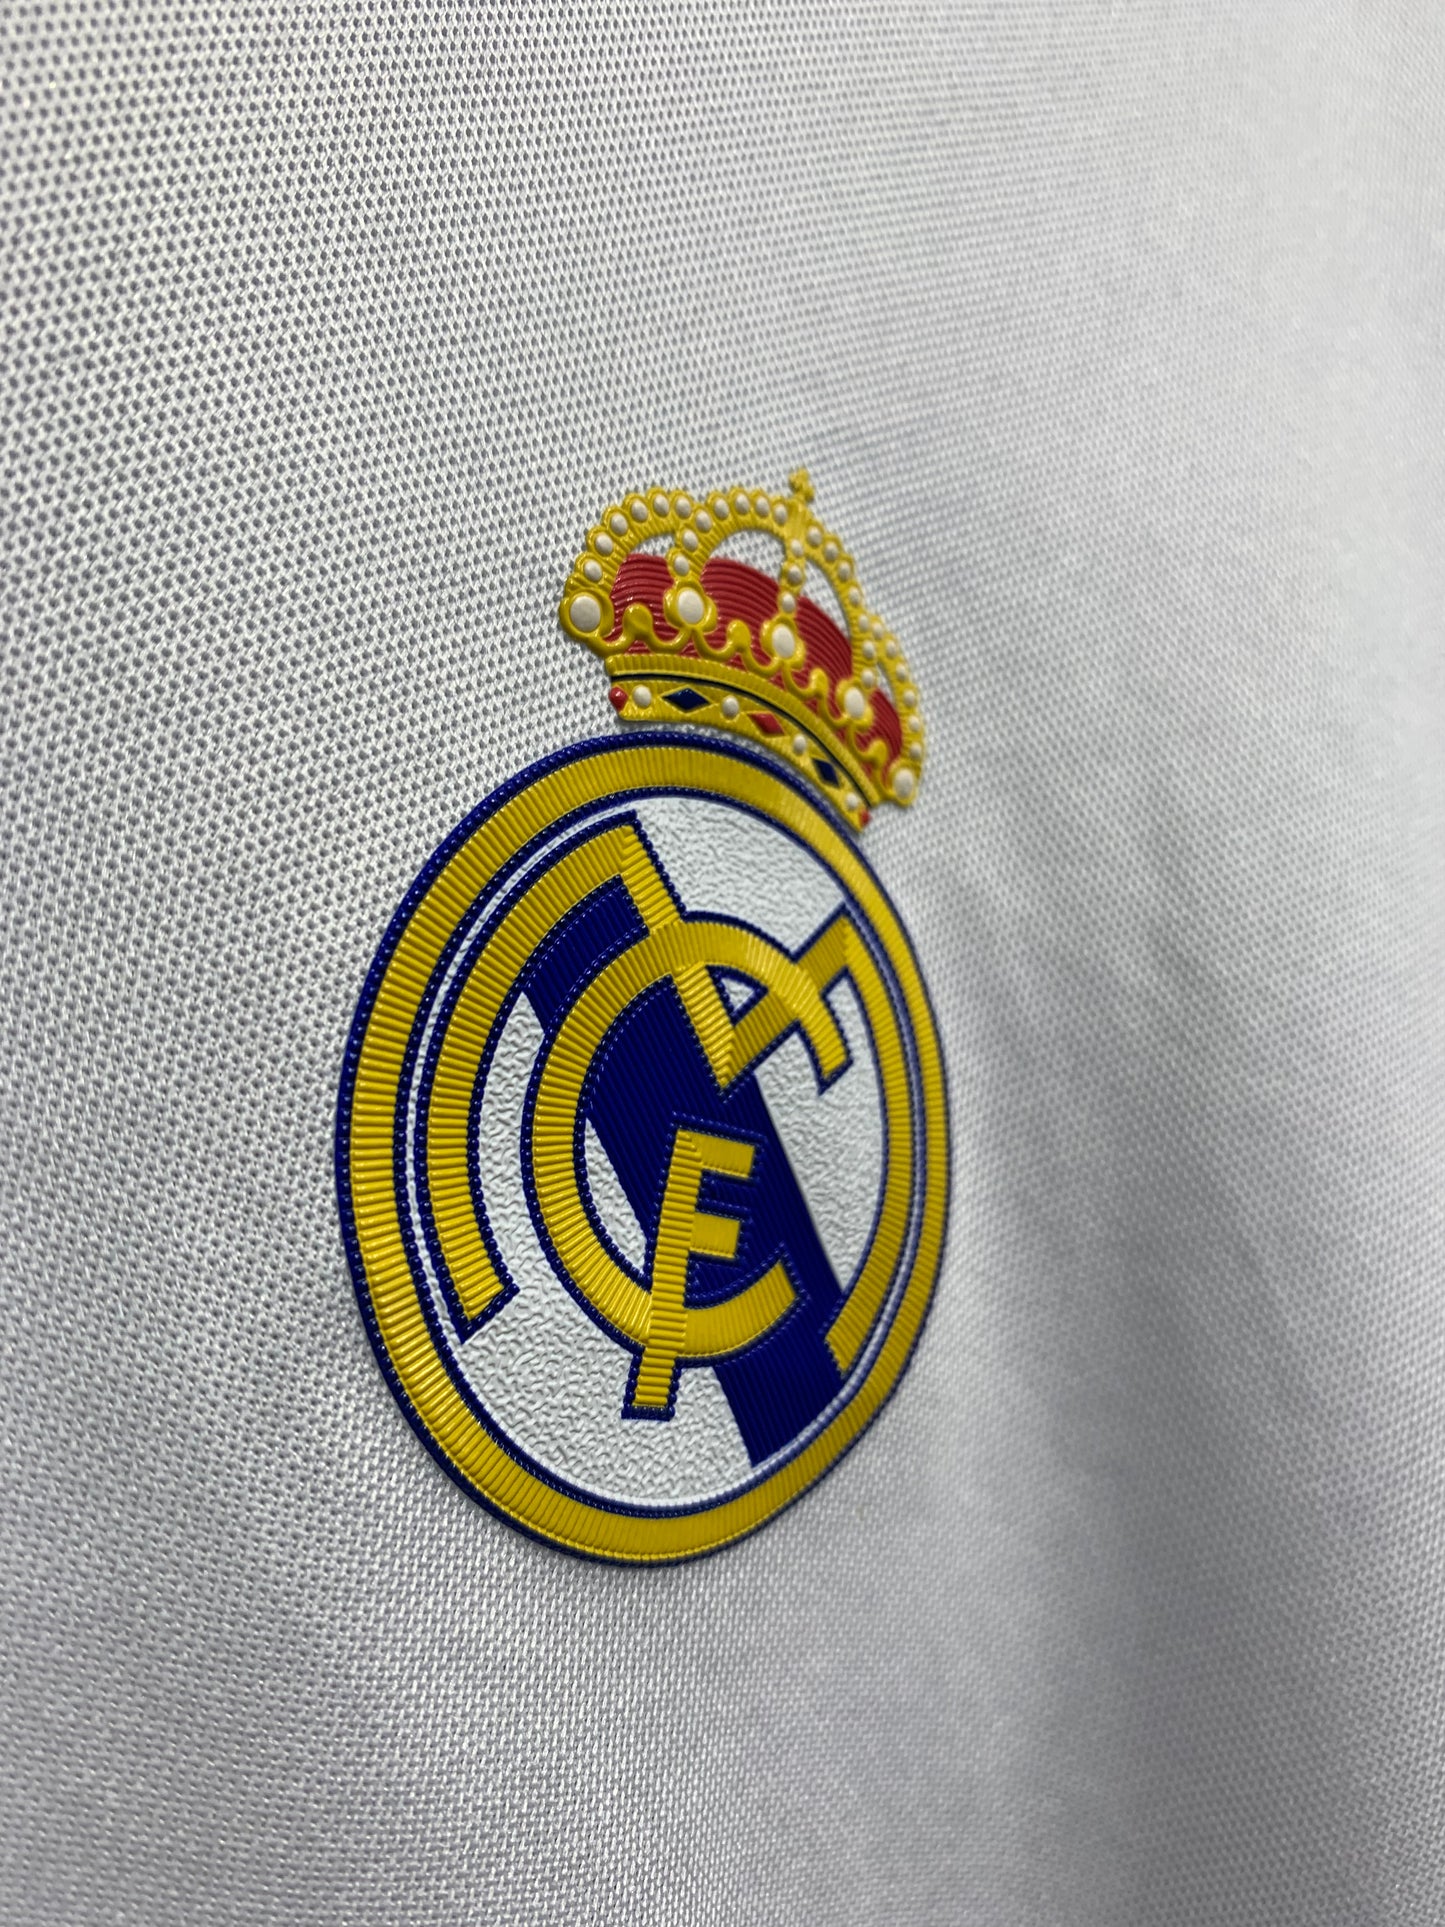 White Adidas Real Madrid F.C Football Shirt